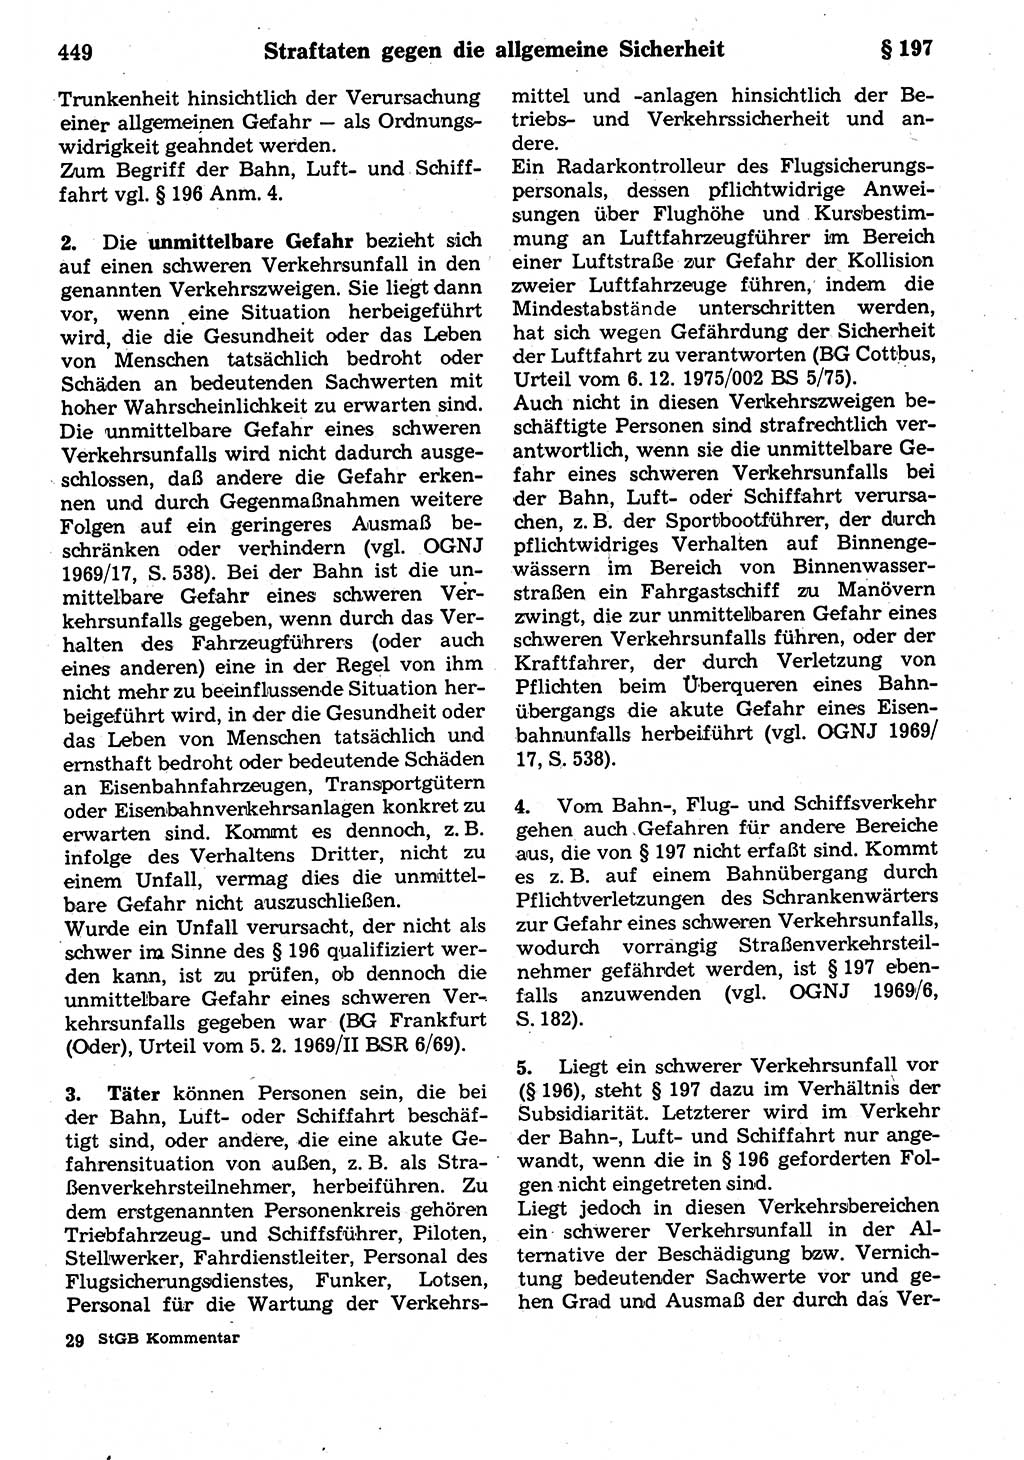 Strafrecht der Deutschen Demokratischen Republik (DDR), Kommentar zum Strafgesetzbuch (StGB) 1987, Seite 449 (Strafr. DDR Komm. StGB 1987, S. 449)